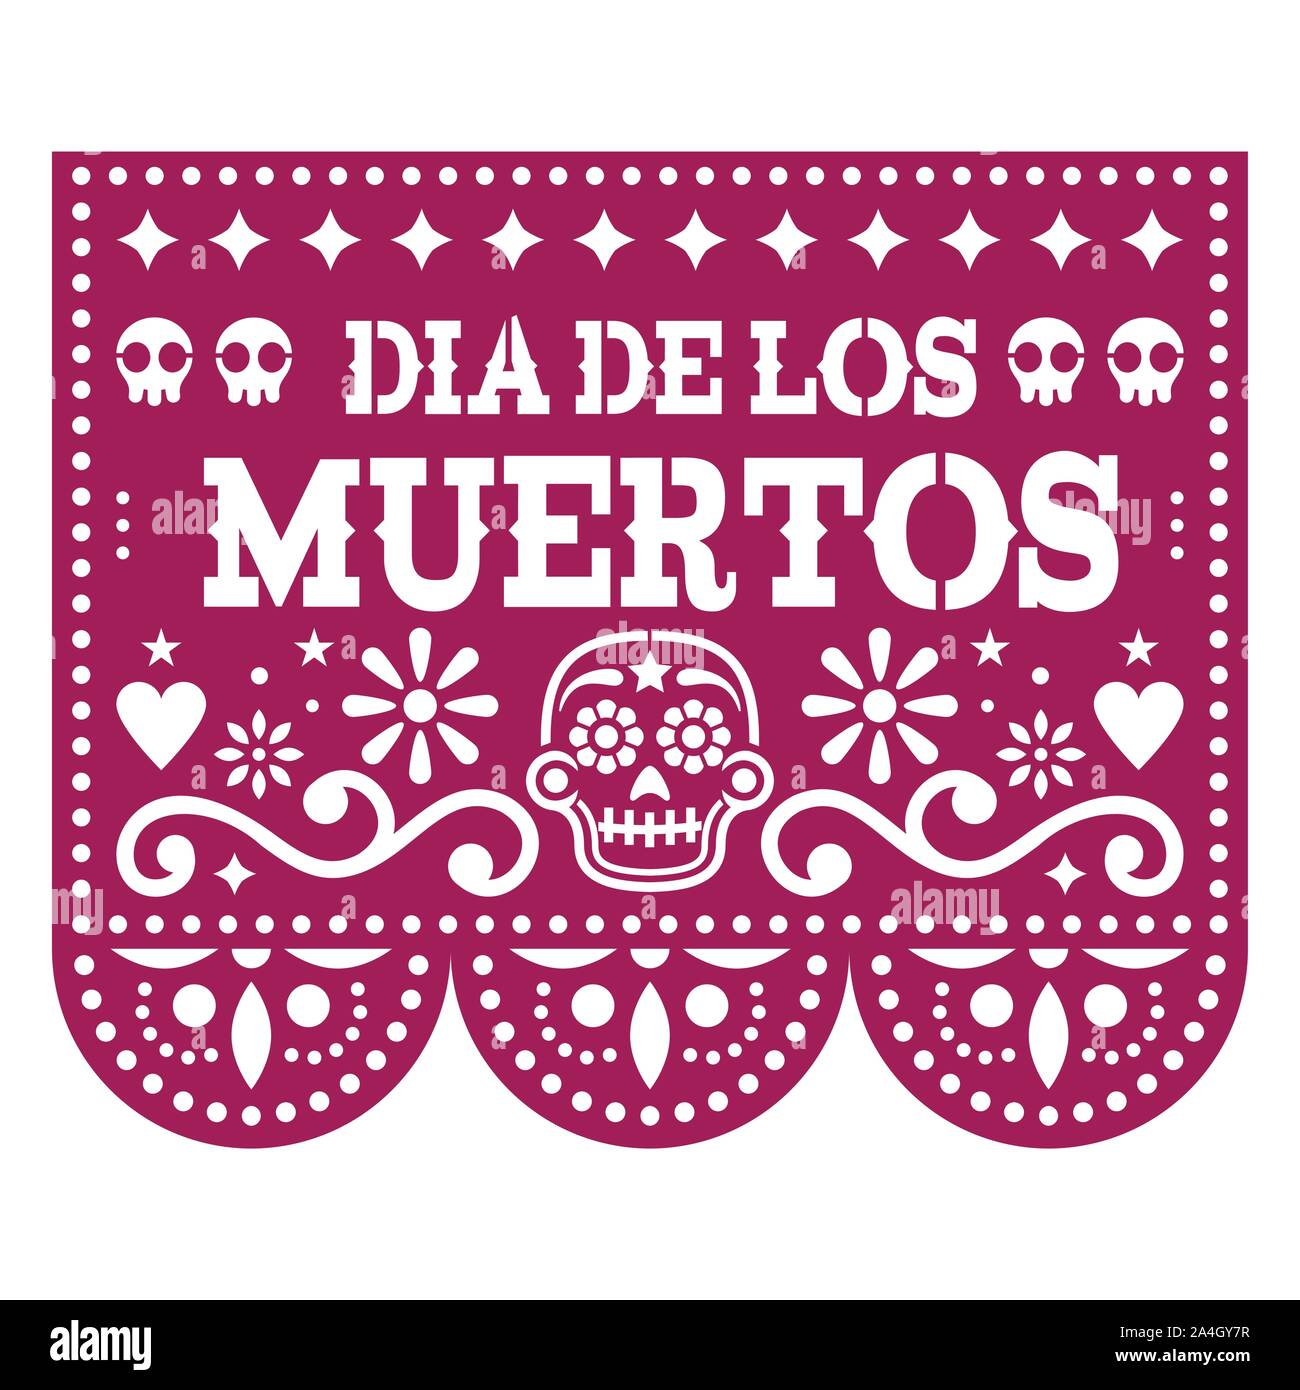 Dia de los Muertos - Jour des Morts papel picado design avec des crânes de sucre mexicain, découper le papier de fond de fleurs et guirlande de crânes Illustration de Vecteur